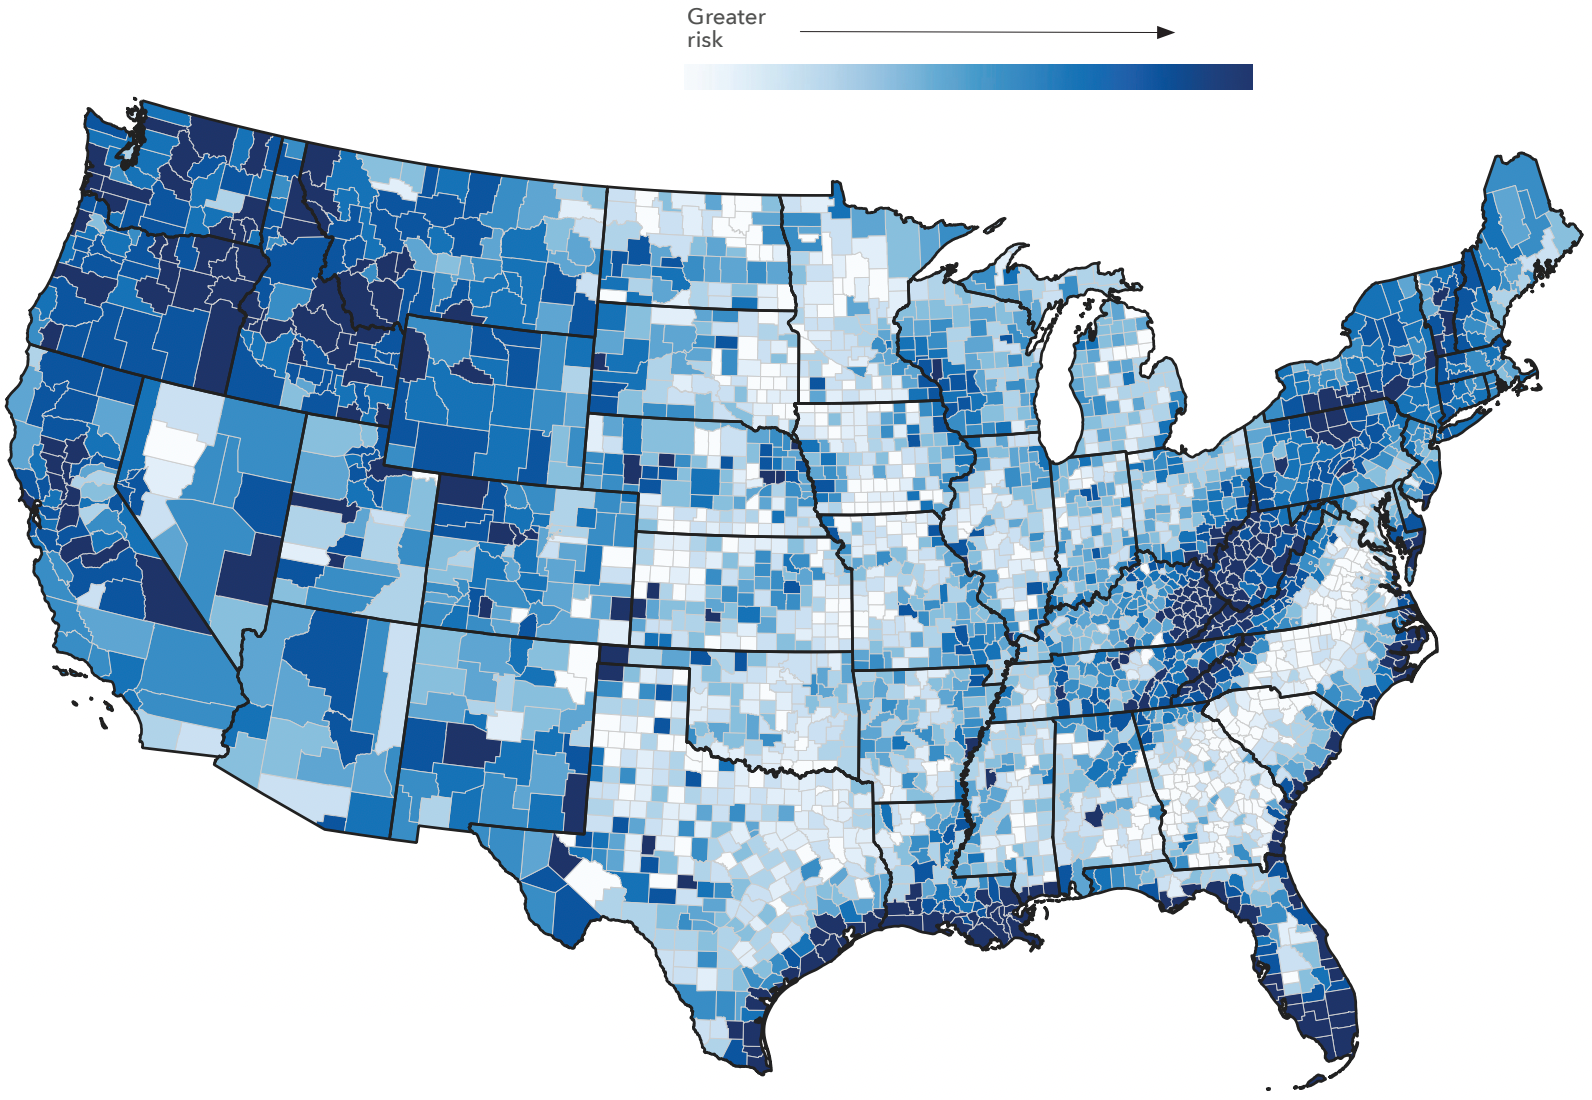 Риски затопления в разных округах США, чем синее — тем выше риски. Источник: First Street Foundation, Infrastructure on the Brink, стр. 9